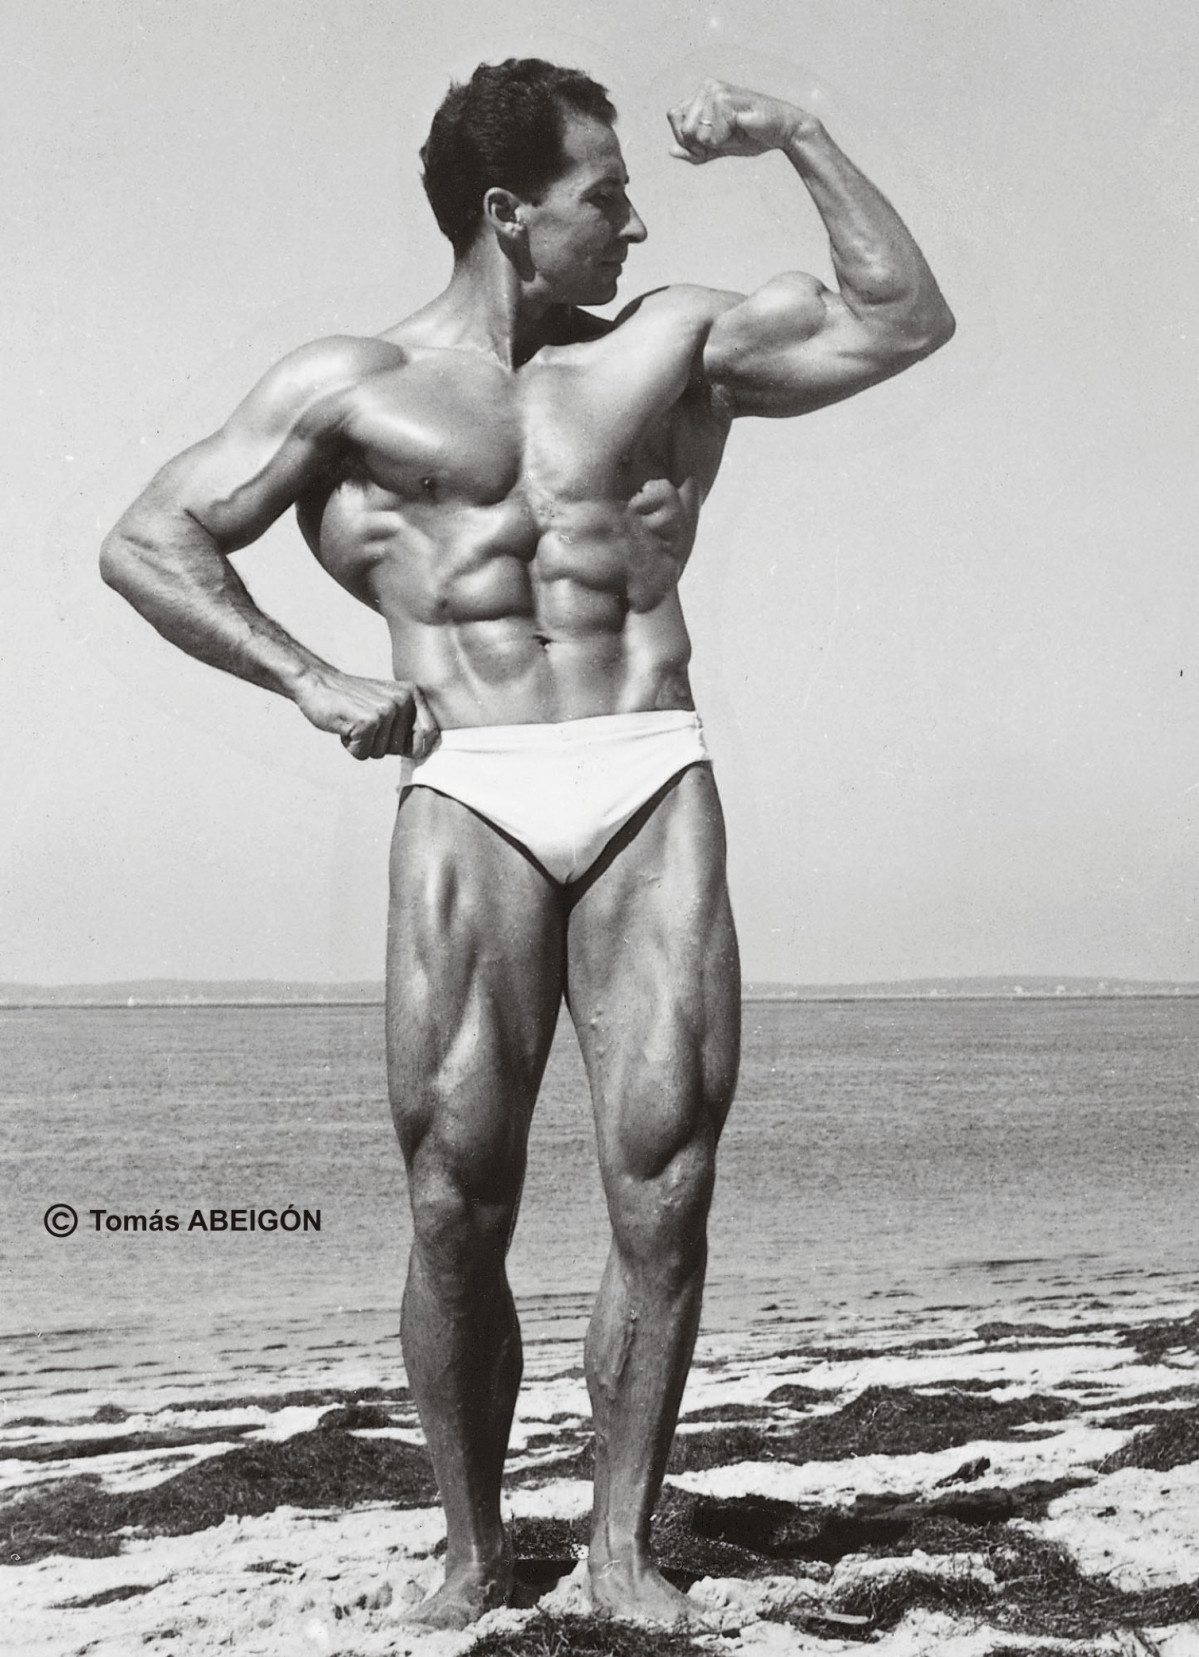 2. Excelente fotografía de Juan FERRERO que plasma fielmente su extraordinaria musculatura